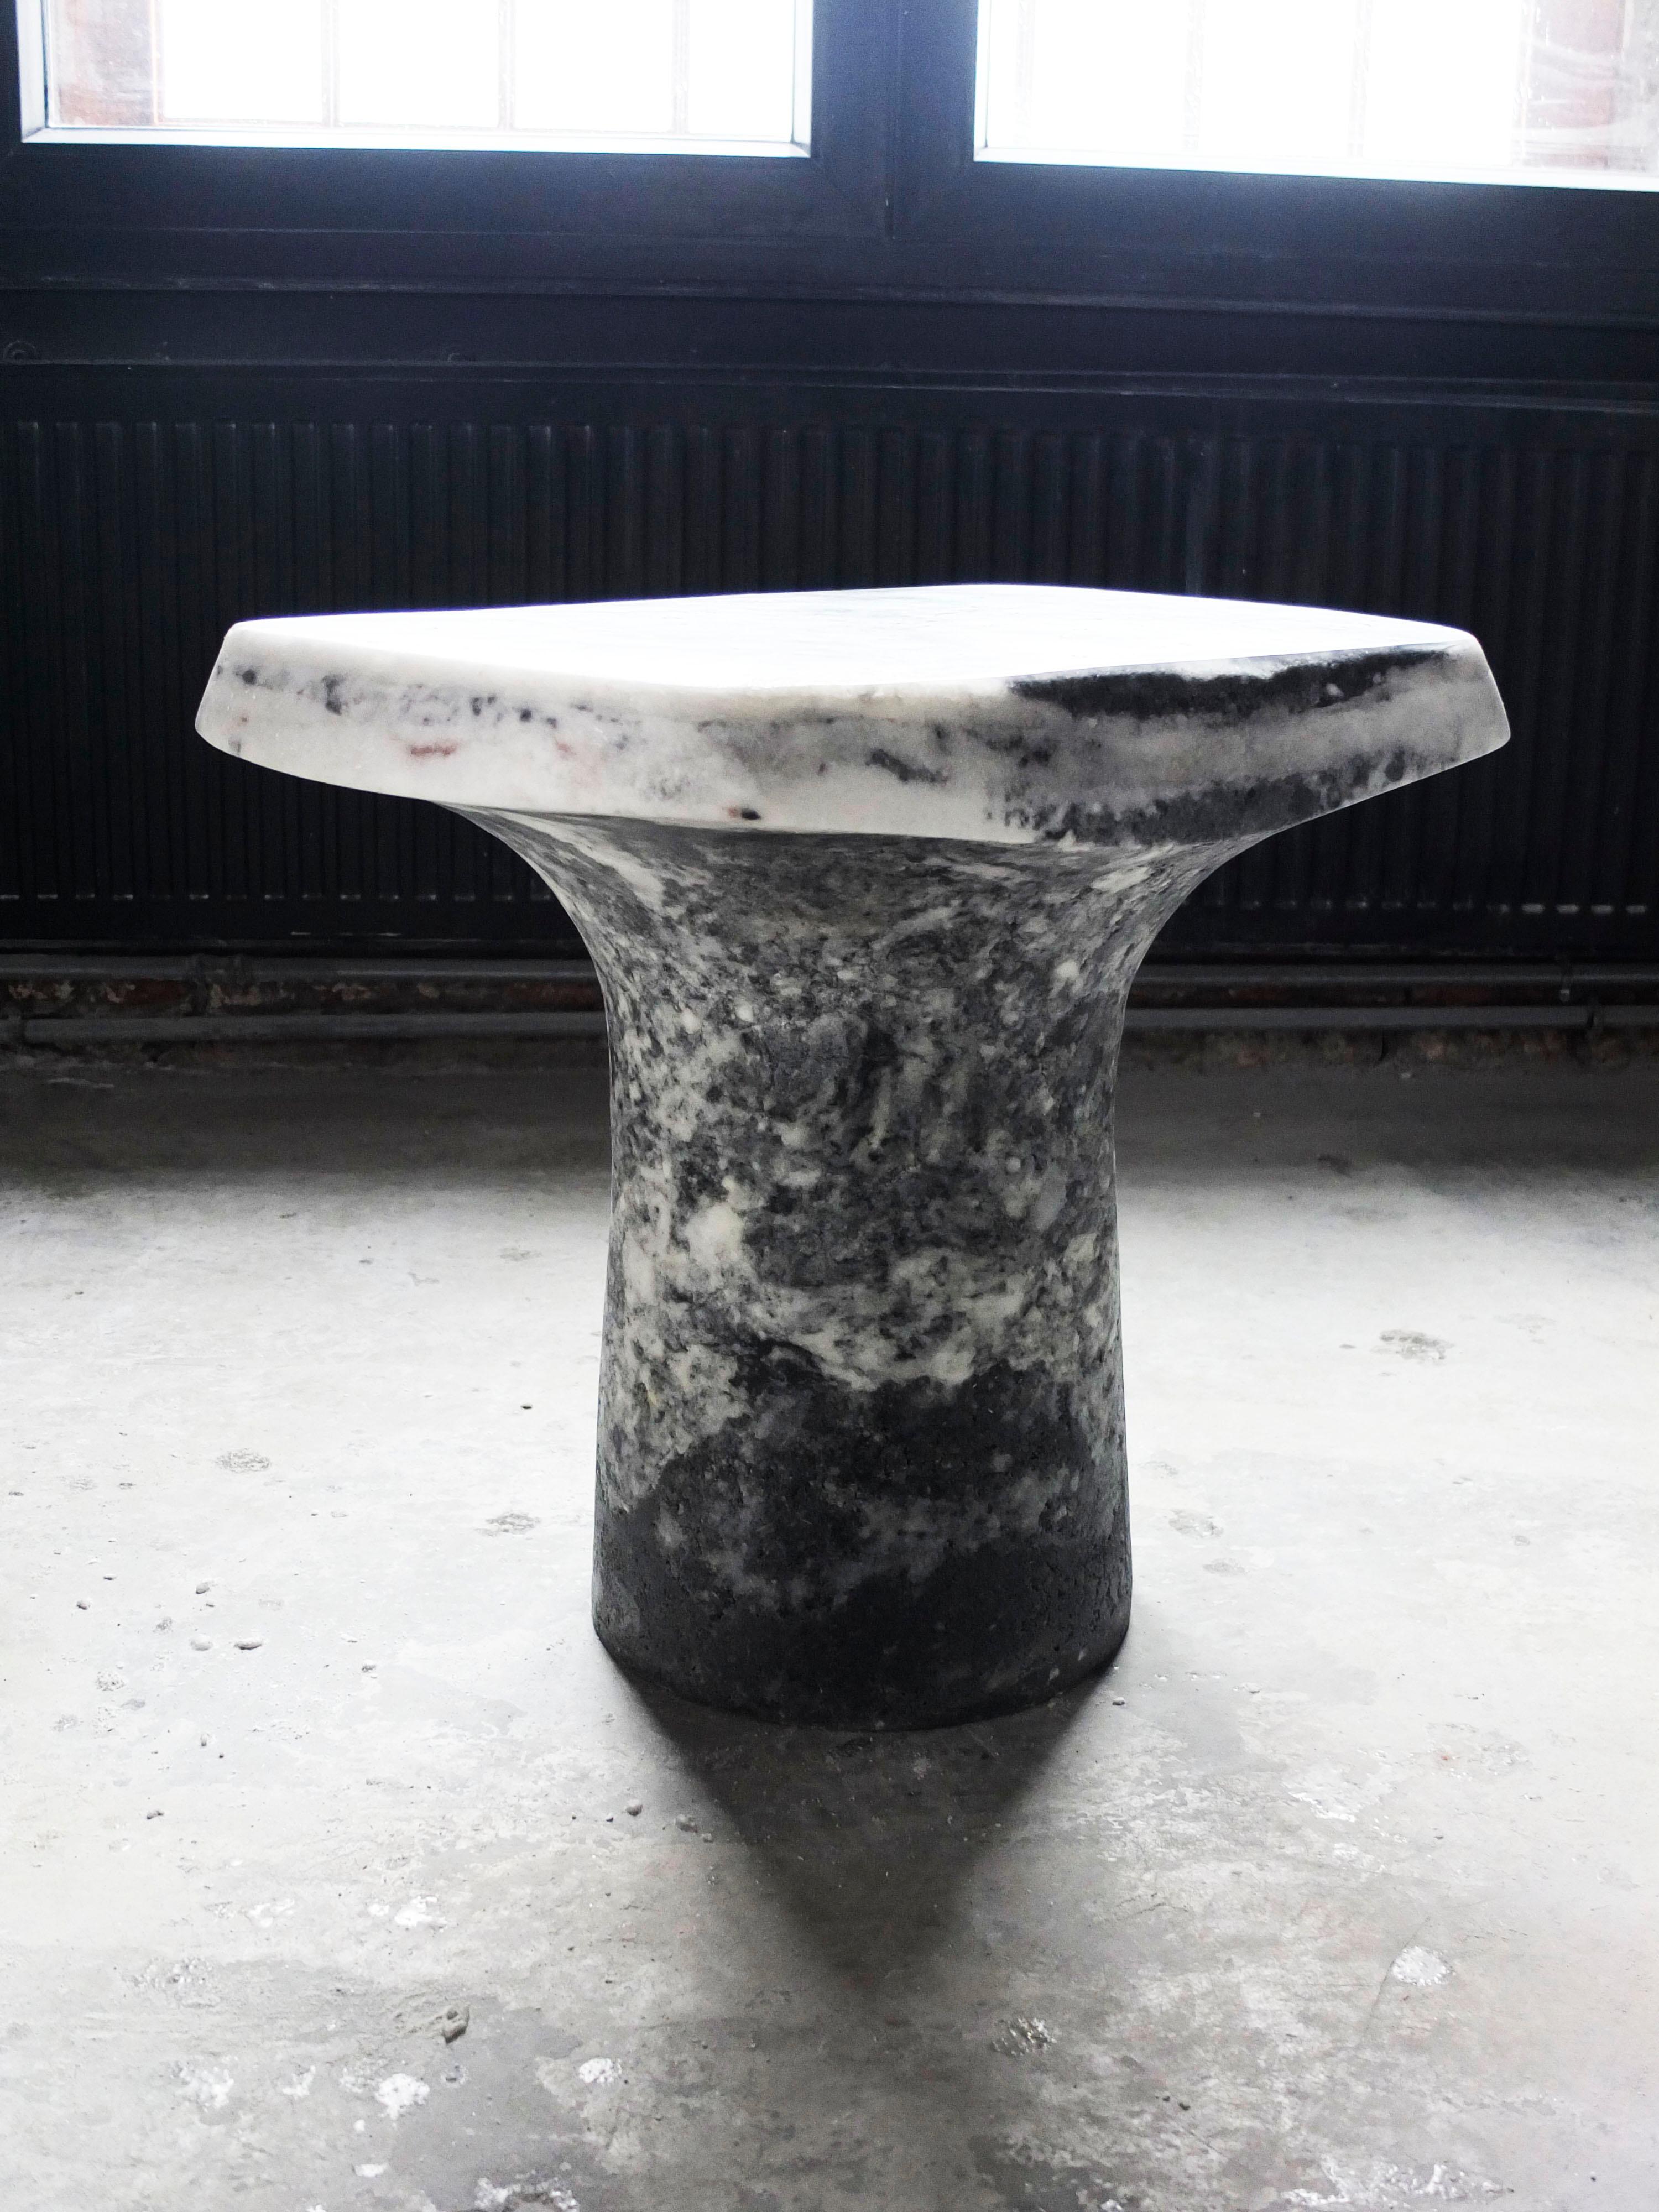 Grauer T-Tisch von Roxane Lahidji
Abmessungen: T 60 x B 40 x H 50 cm.
MATERIALIEN: Marmor Salz.
Gewicht: 50 kg.

Roxane Lahidji ist eine Sozialdesignerin, die sich auf die Entwicklung und Anwendung ökologischer Materialien spezialisiert hat. Ihre